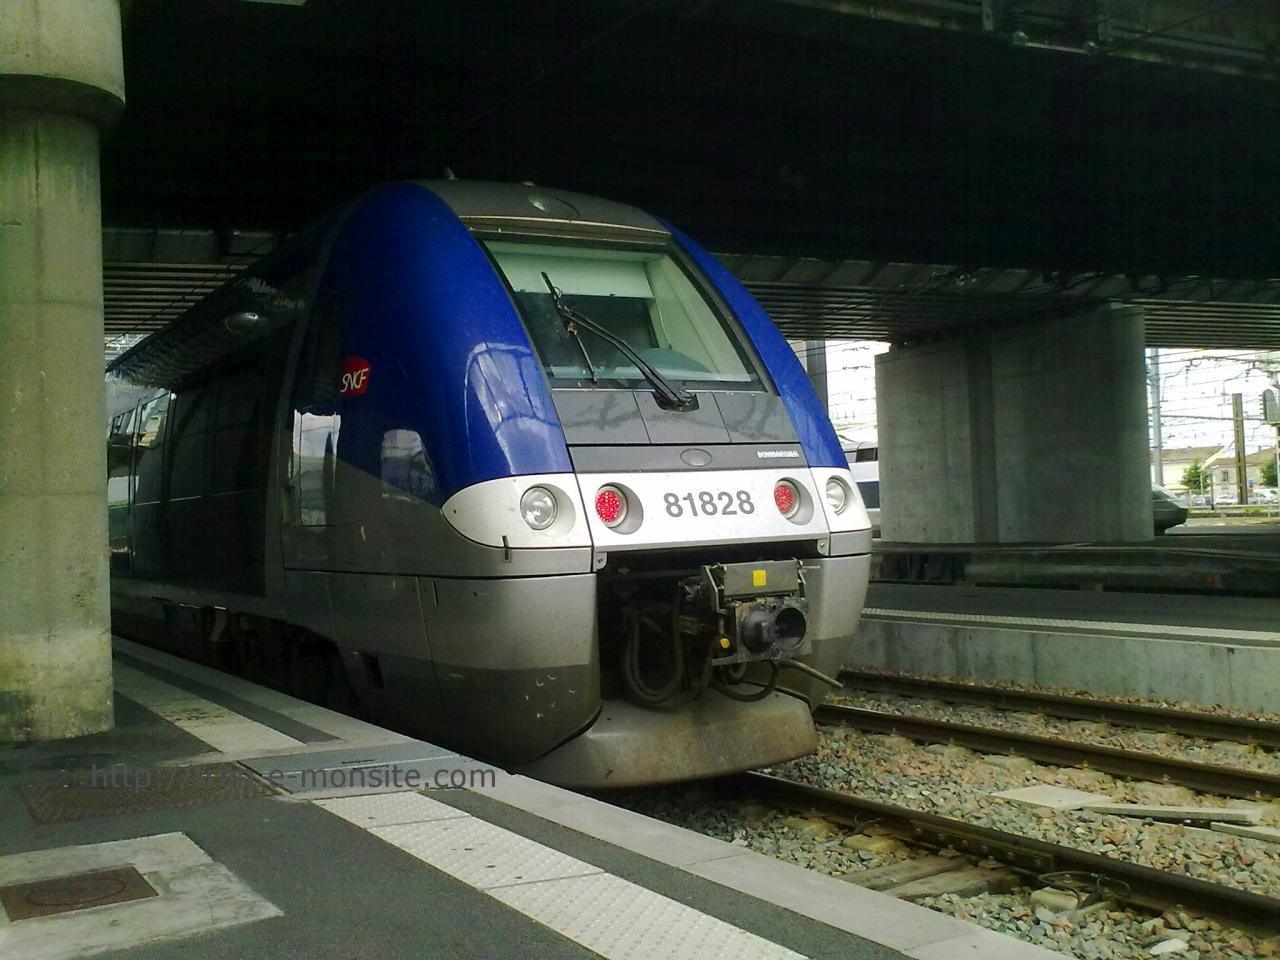 Autorail AGC B 81828 en gare de Bordeaux